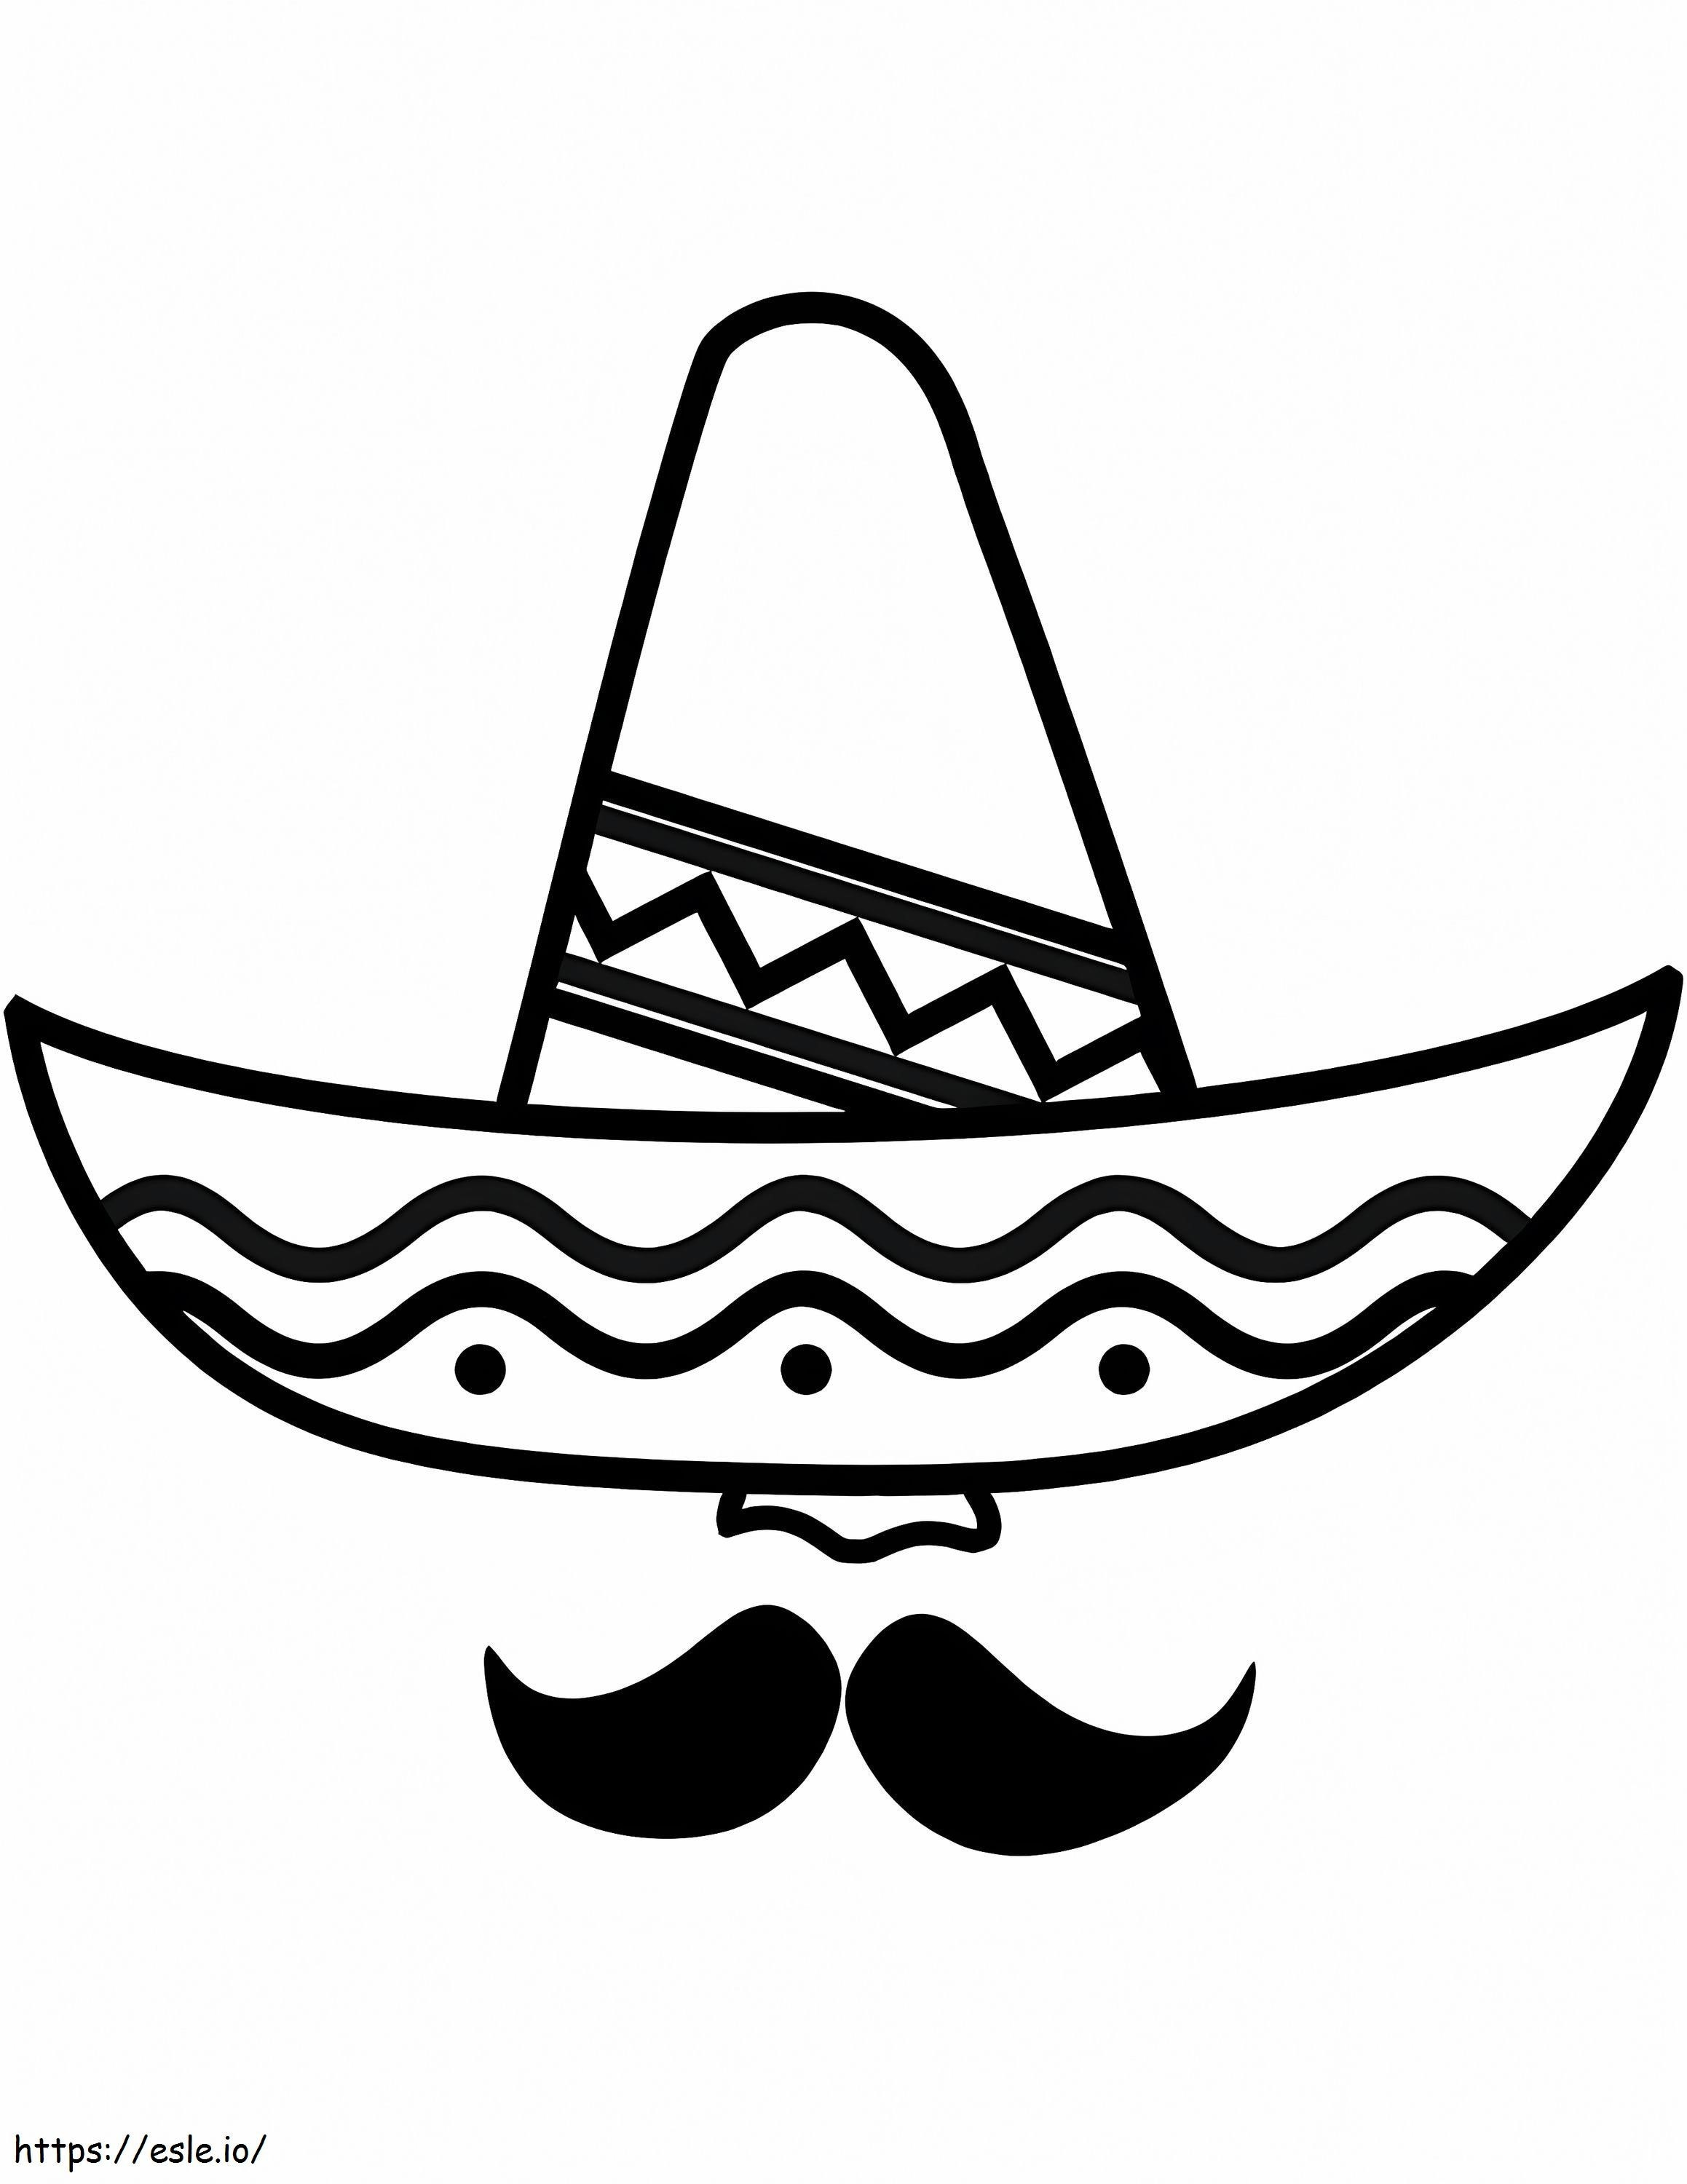 Sombrero und Schnurrbart ausmalbilder